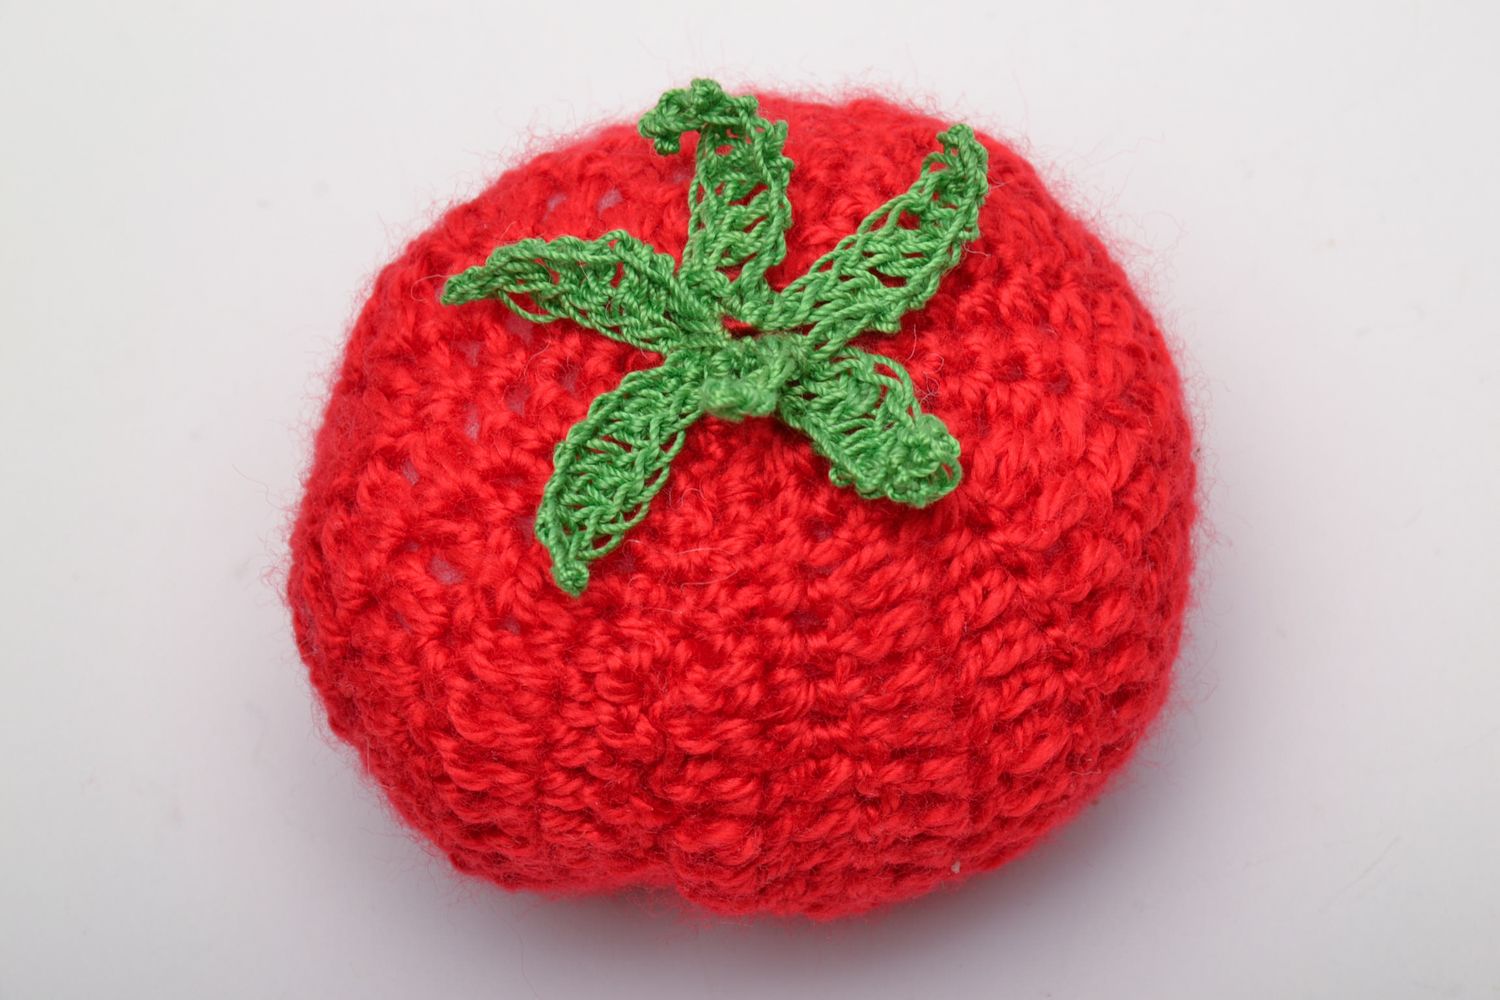 Soft crochet toy tomato photo 2